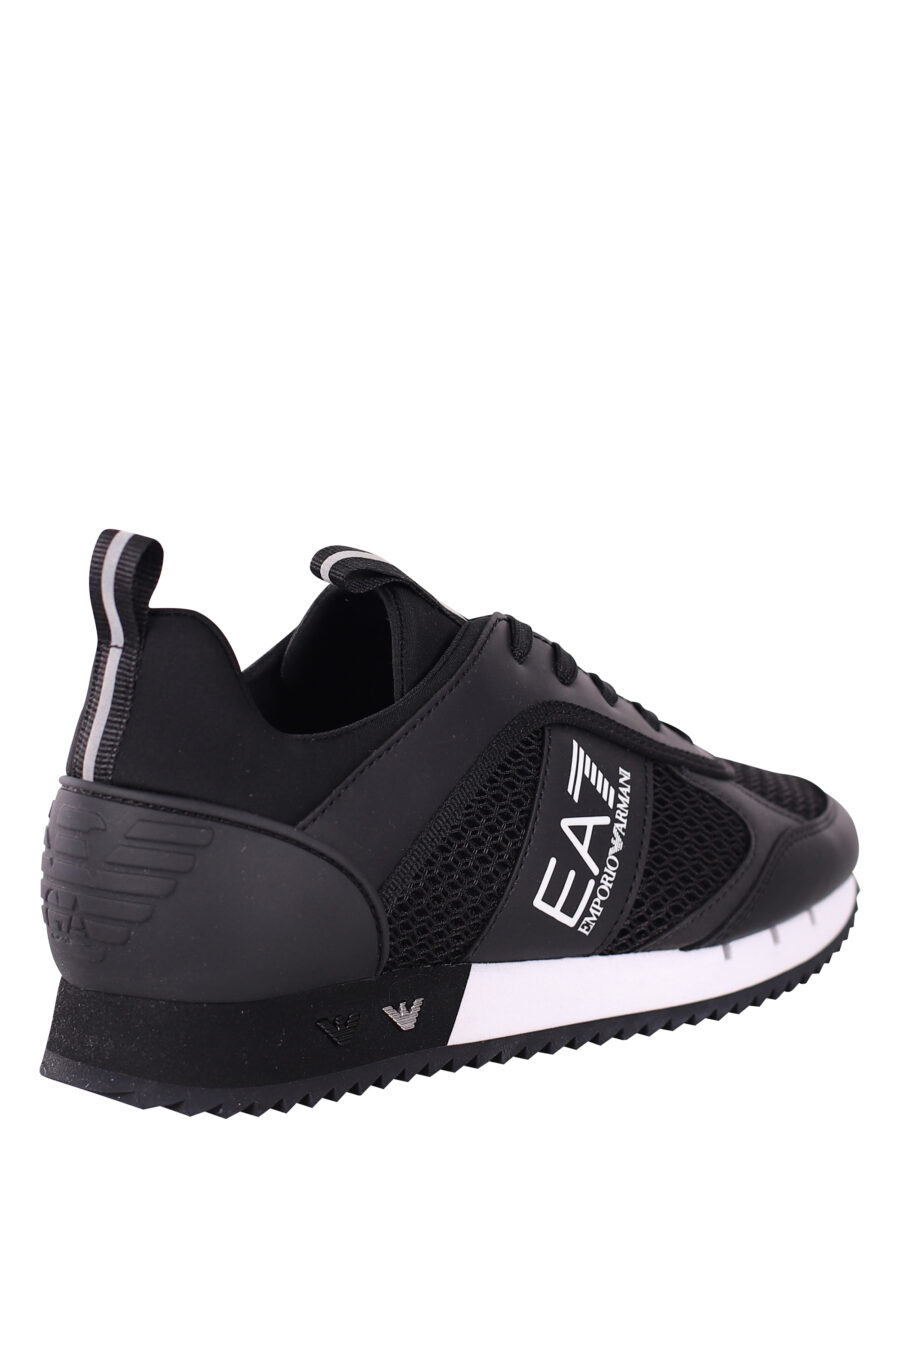 Zapatillas negras transpirables con logo "lux identity" blanco y suela bicolor - IMG 5771